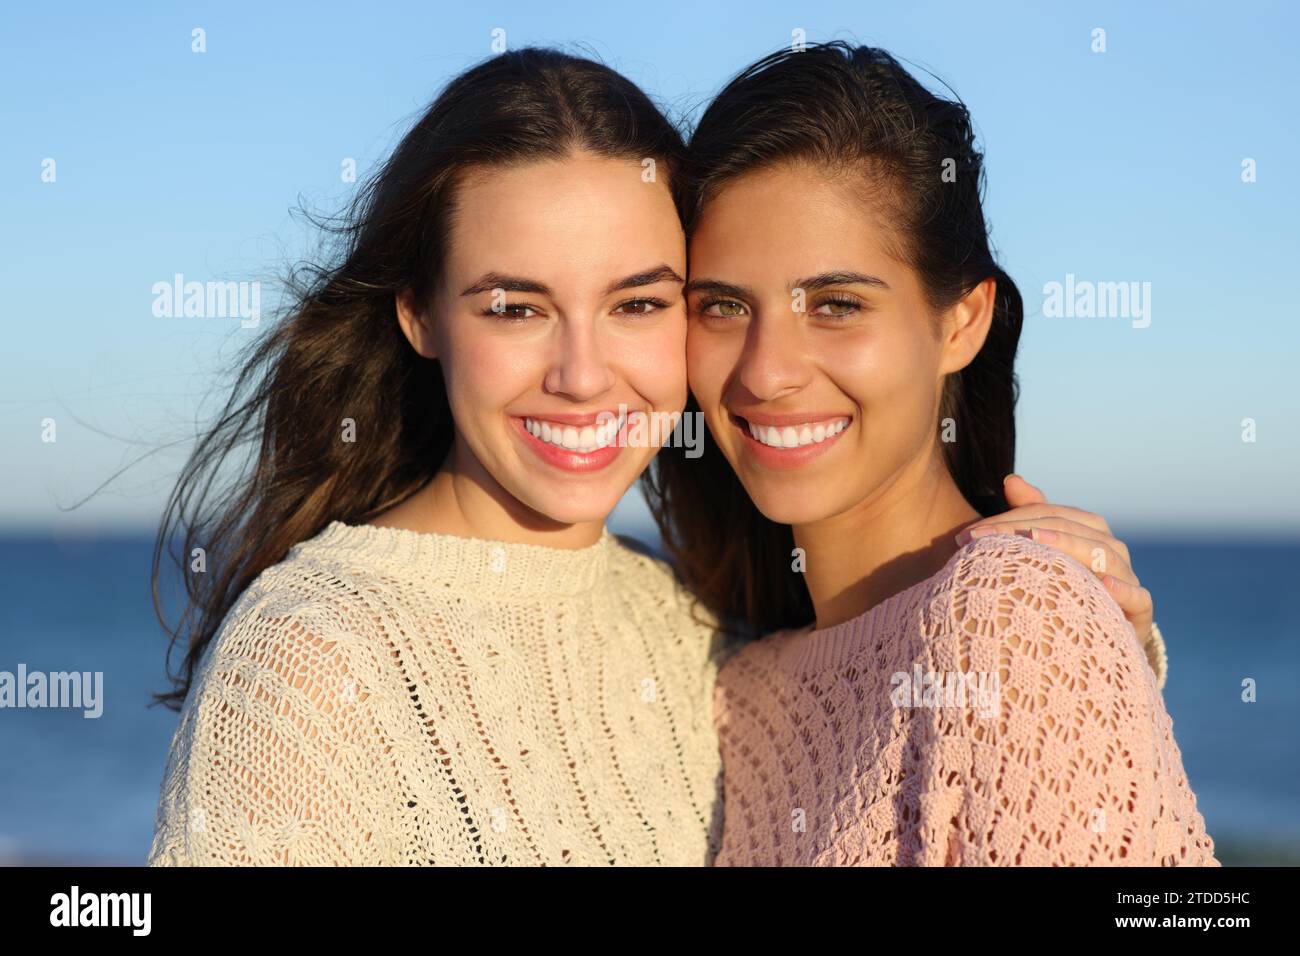 Dos mujeres felices sonriendo con sonrisas perfectas a la cámara en la playa al atardecer Foto de stock